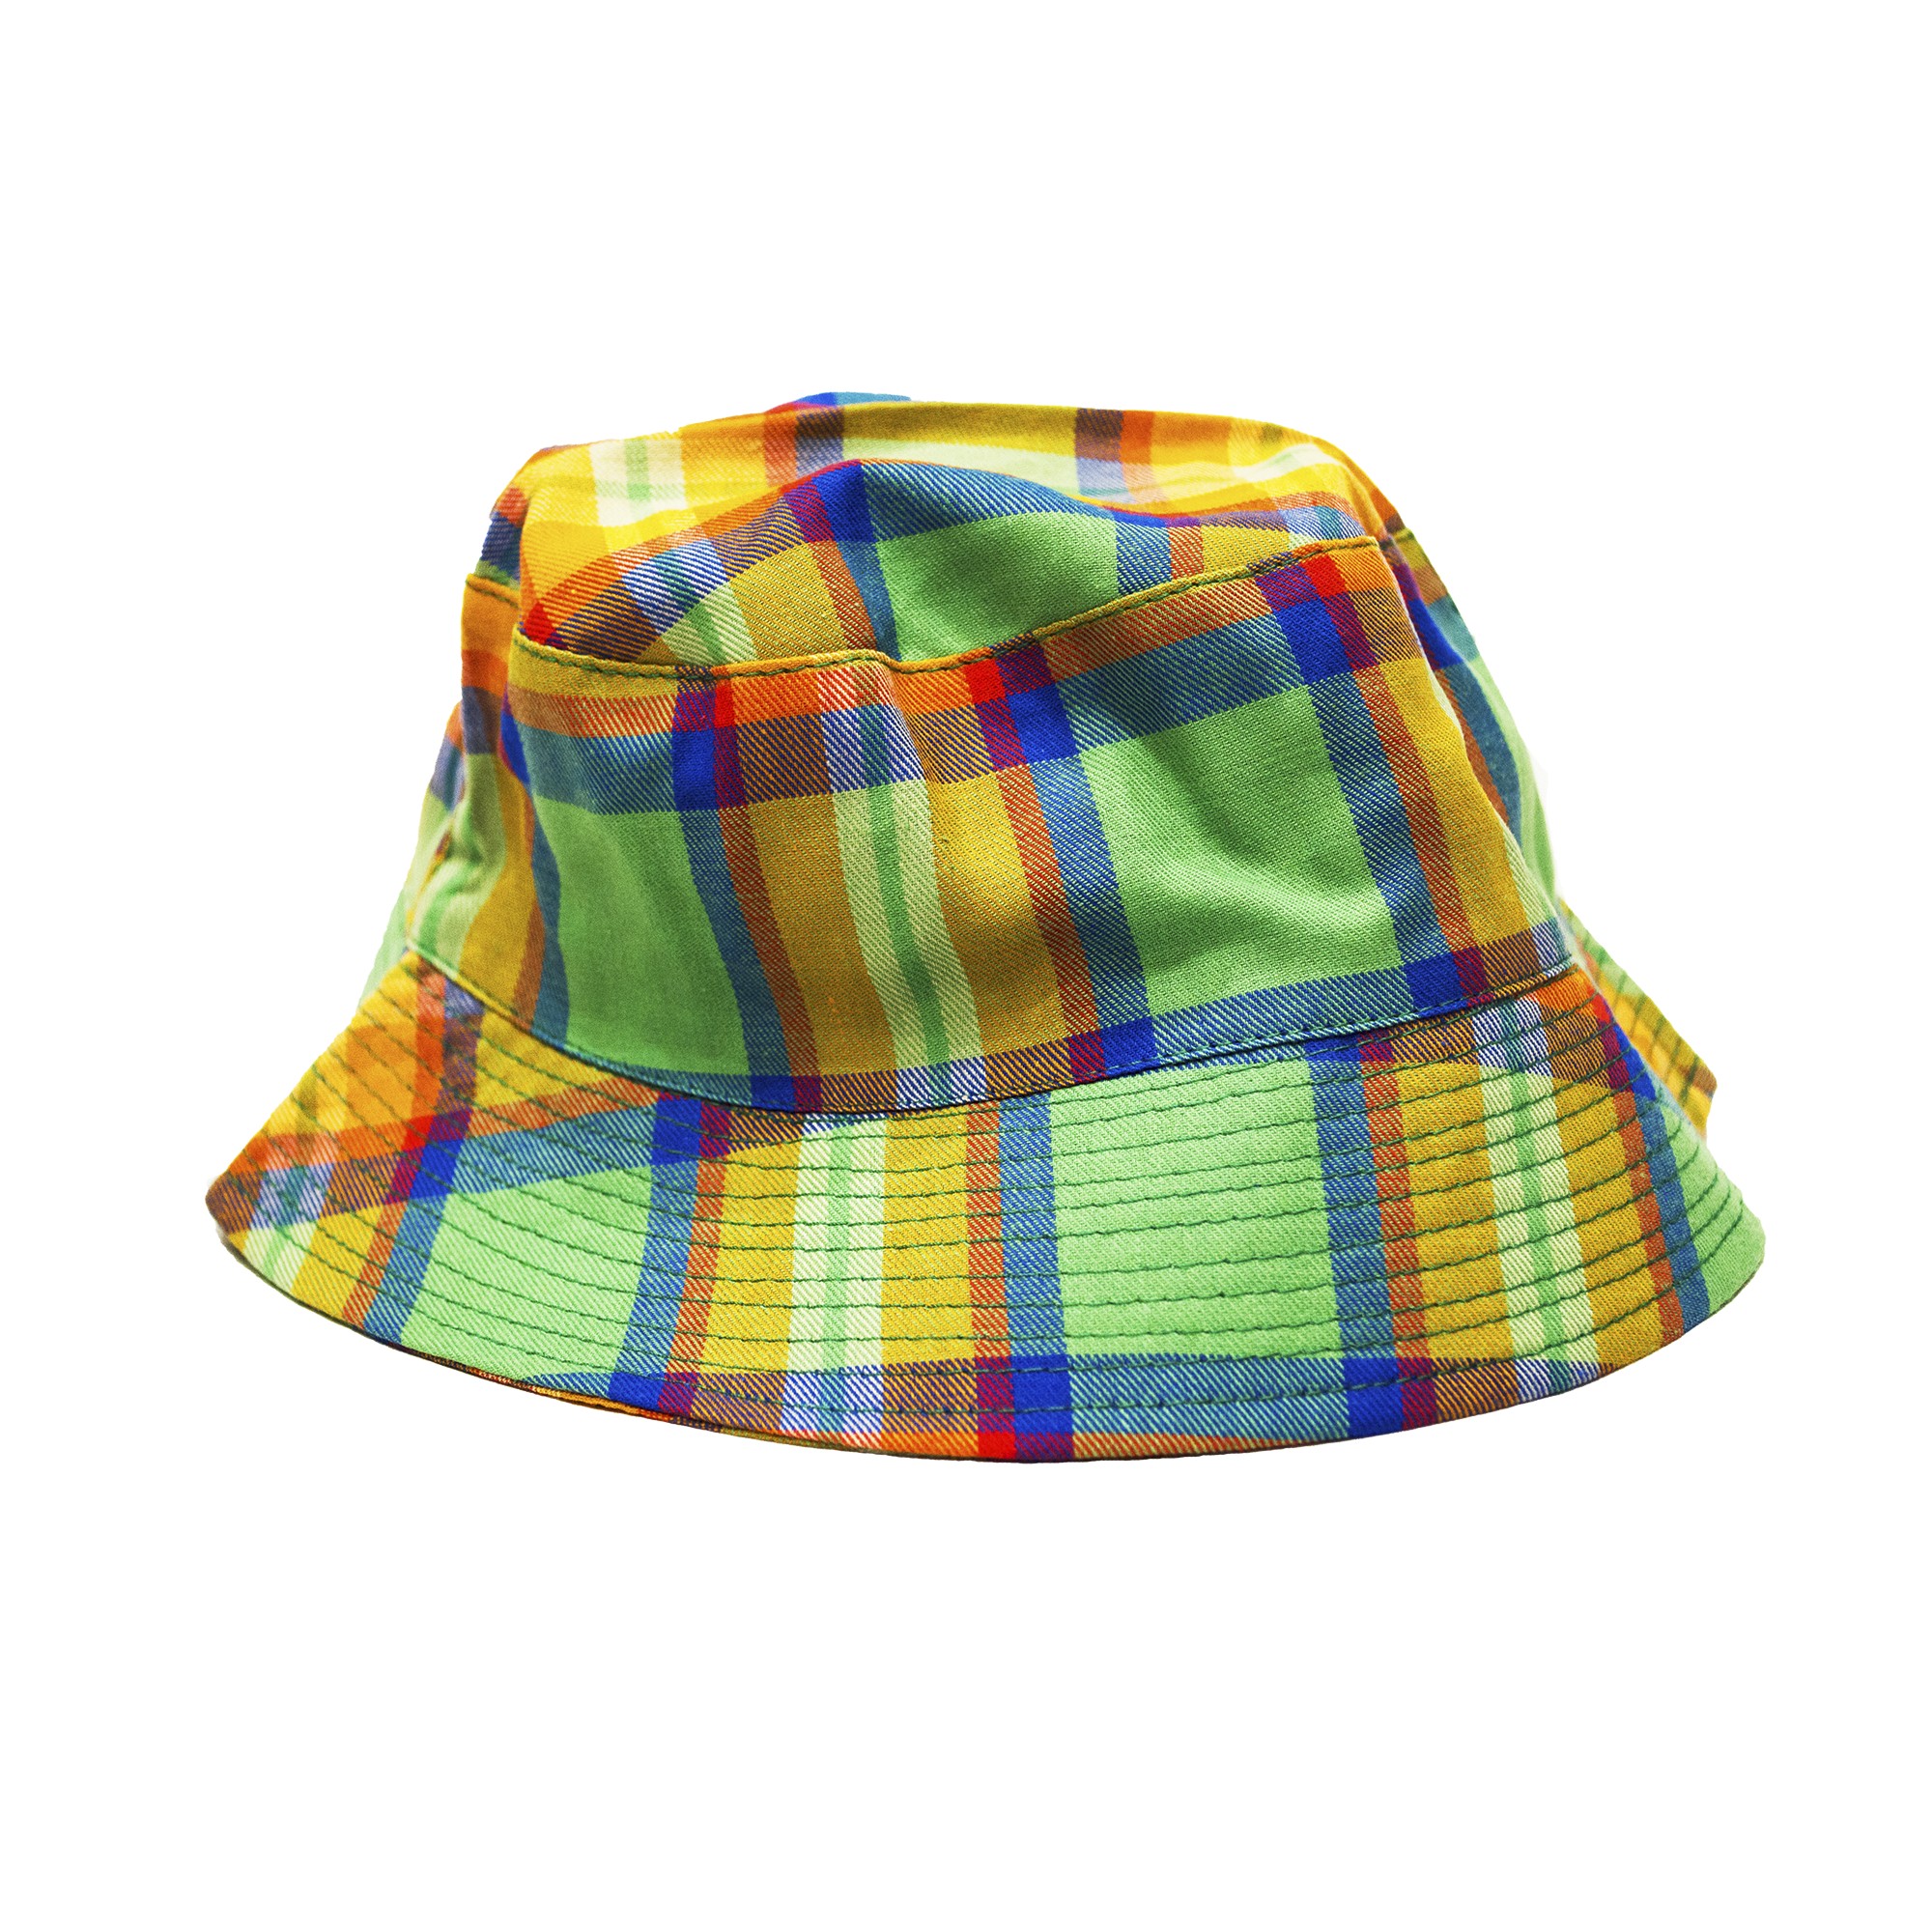 

Детские панамы и шляпы ( 1 шт ) George зелёного цвета в цветную клеточку 1-3 года (48-50см) 914